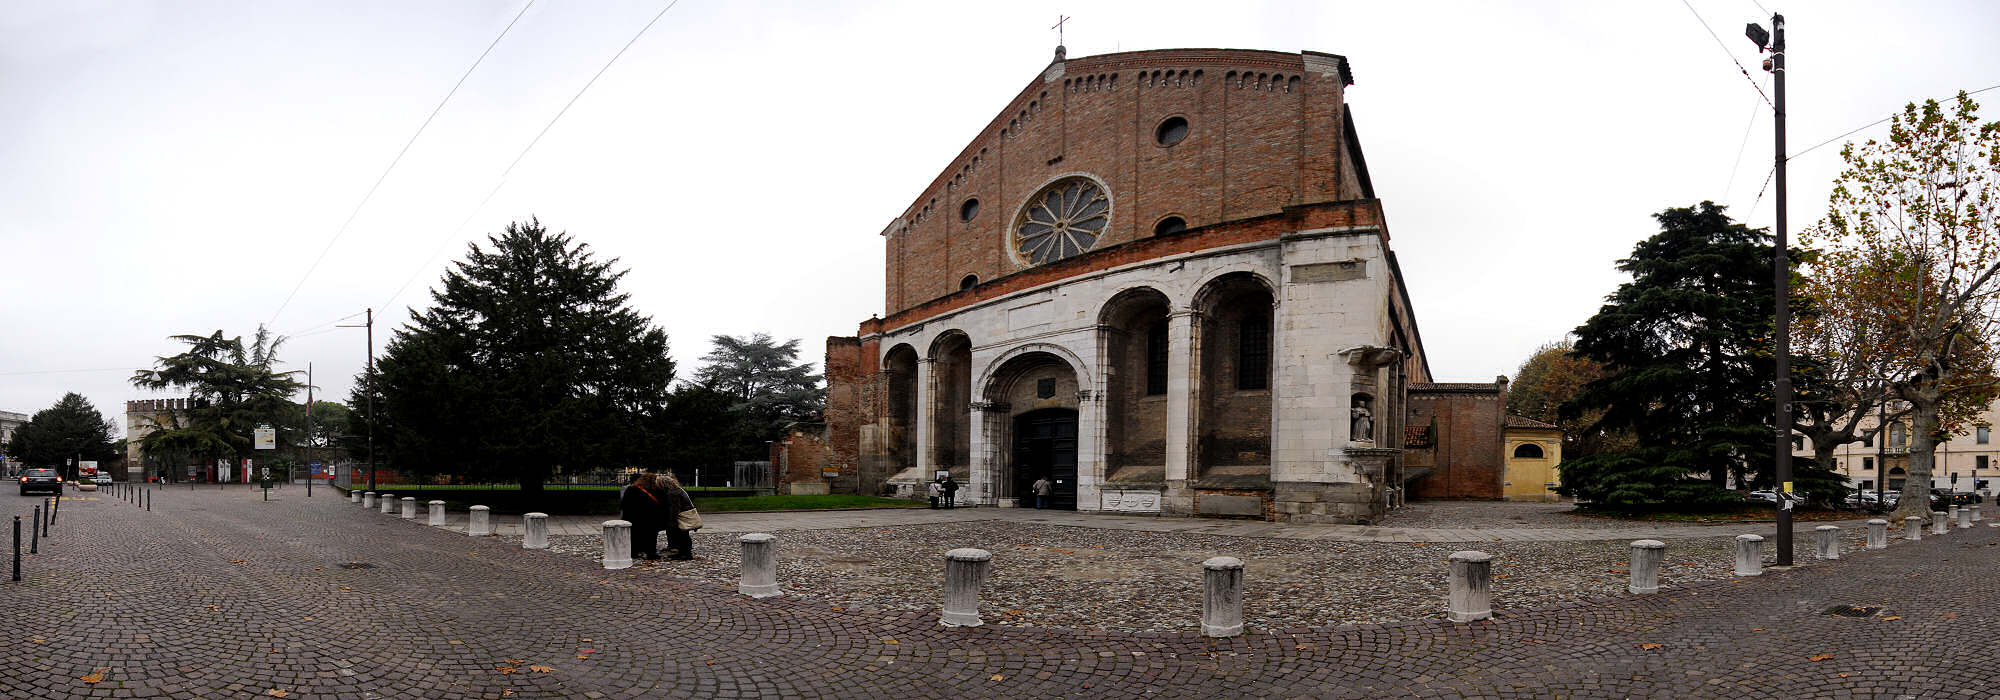 Padova - piazza Eremitani, Musei Civici agli Eremitani